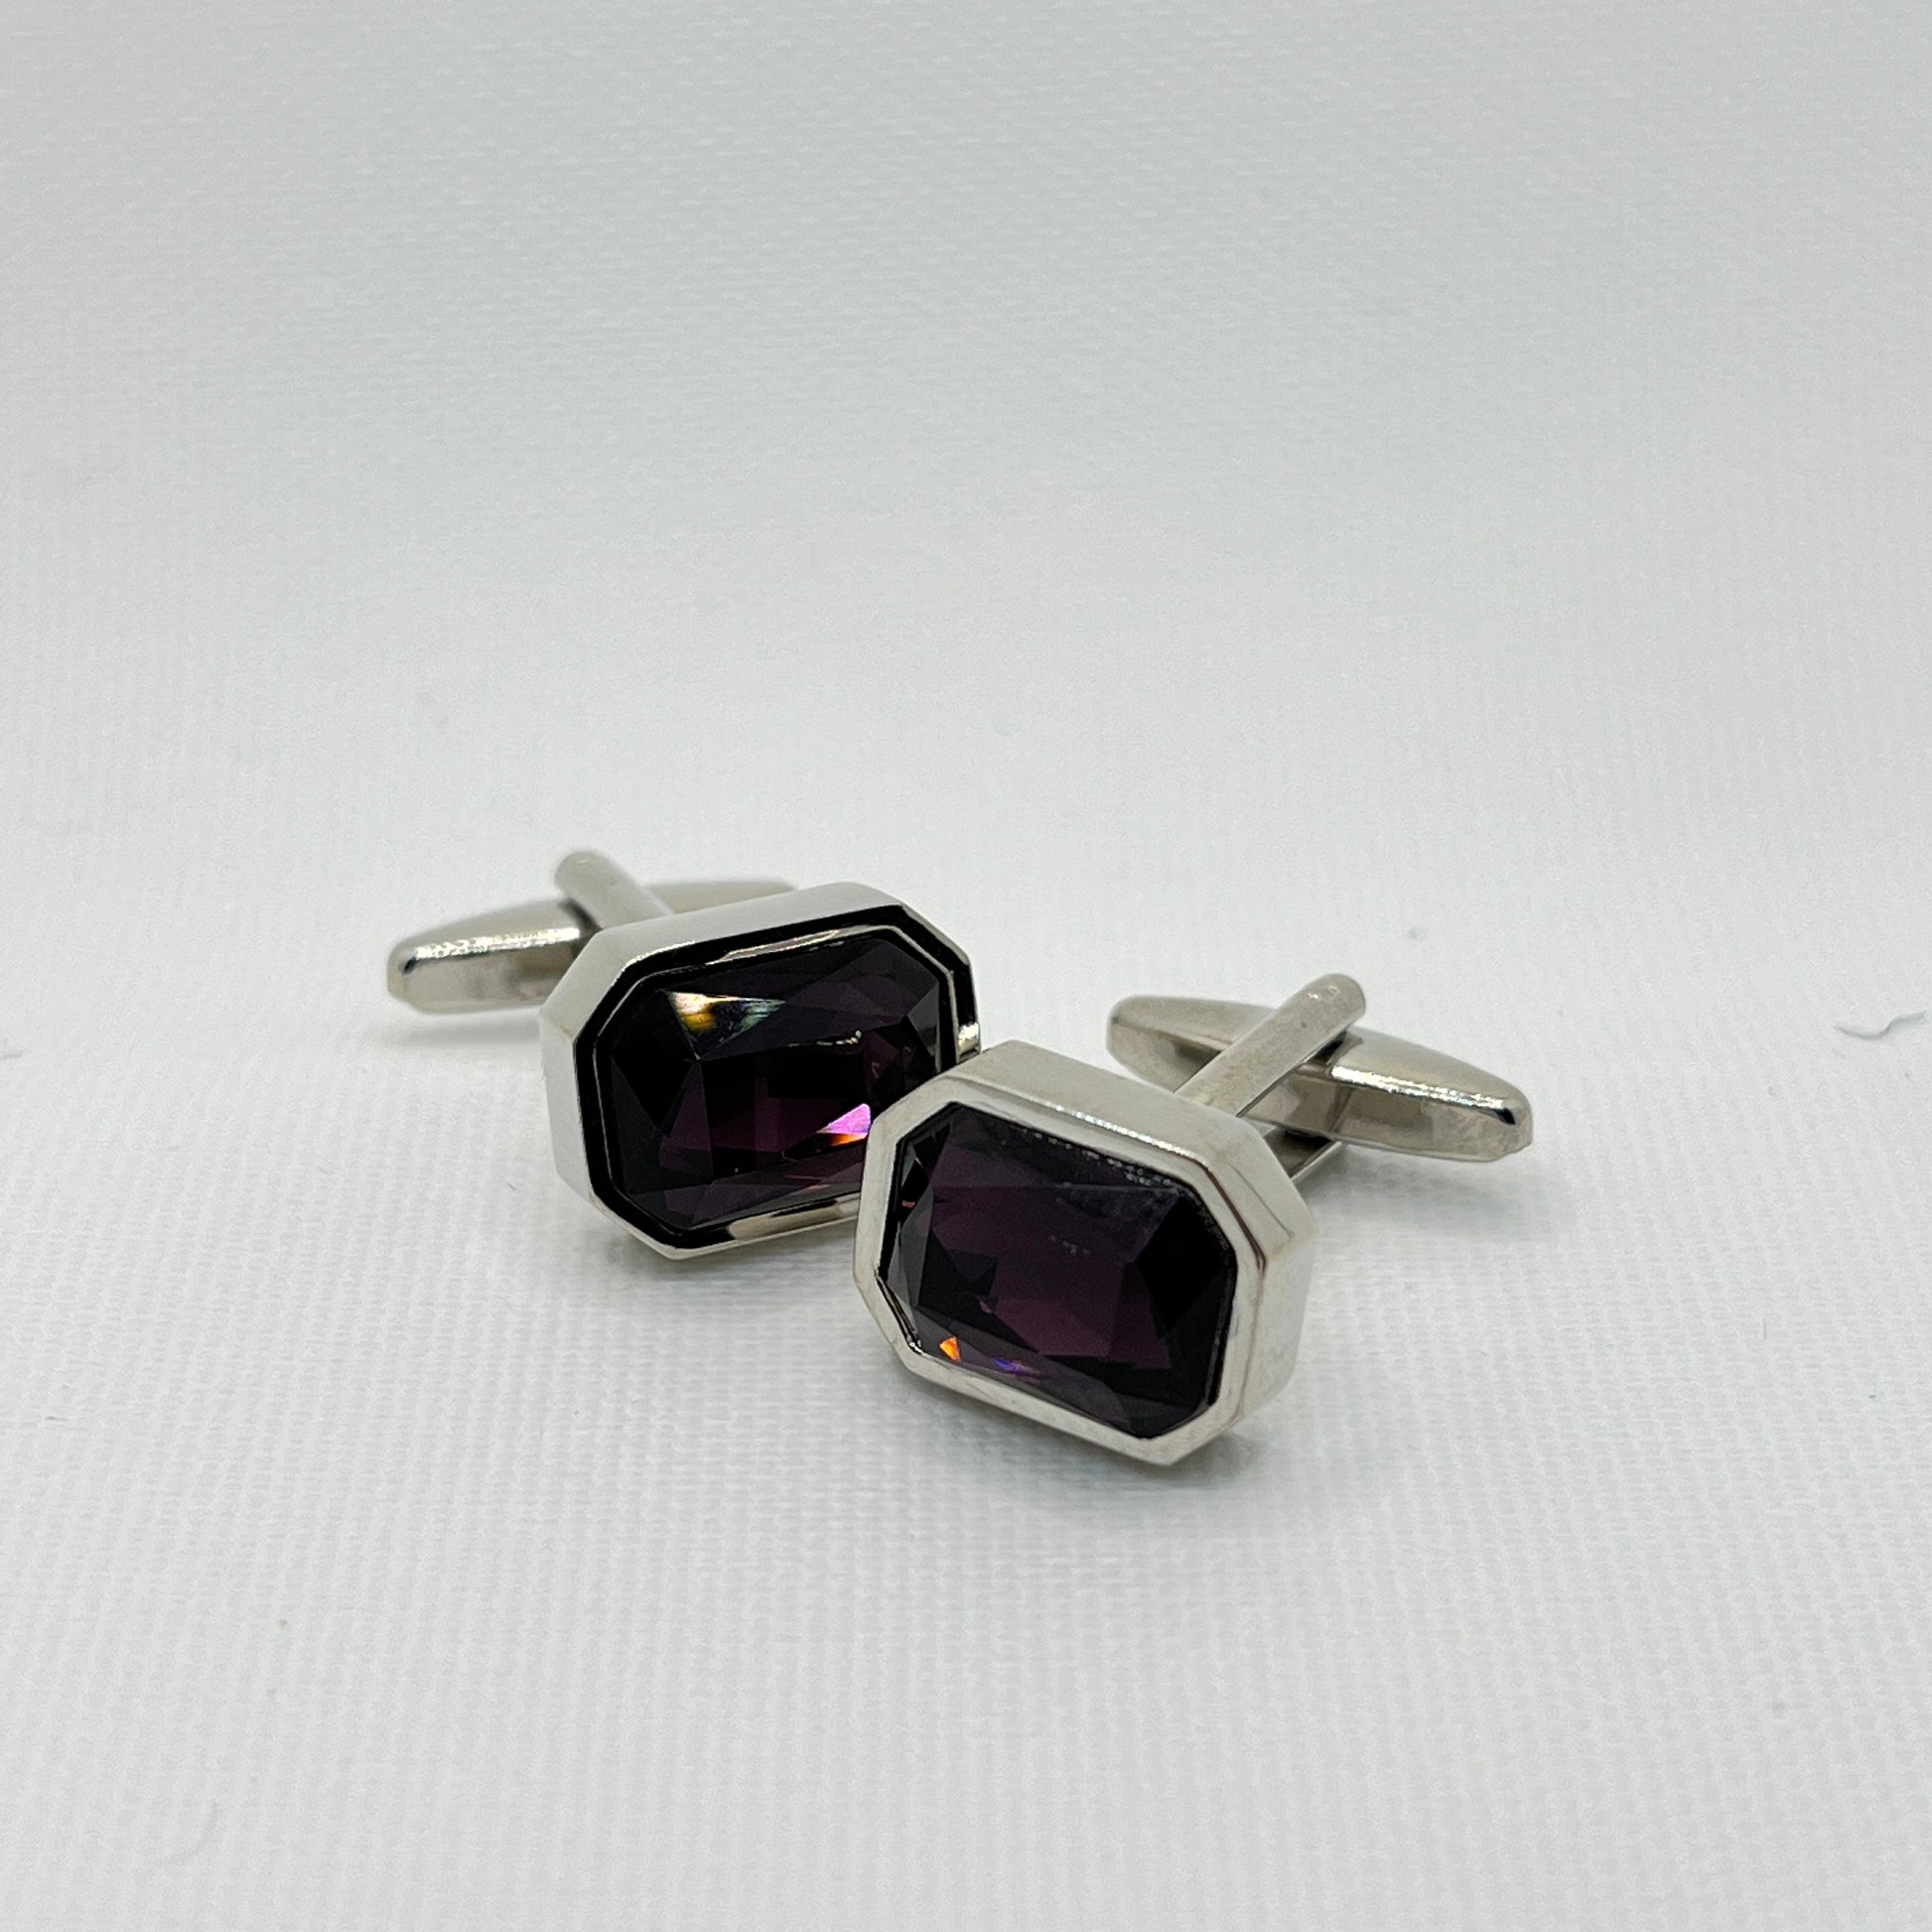 Tasker & Shaw | Luxury Menswear | Oblong octagonal cufflinks with deep purple crystal